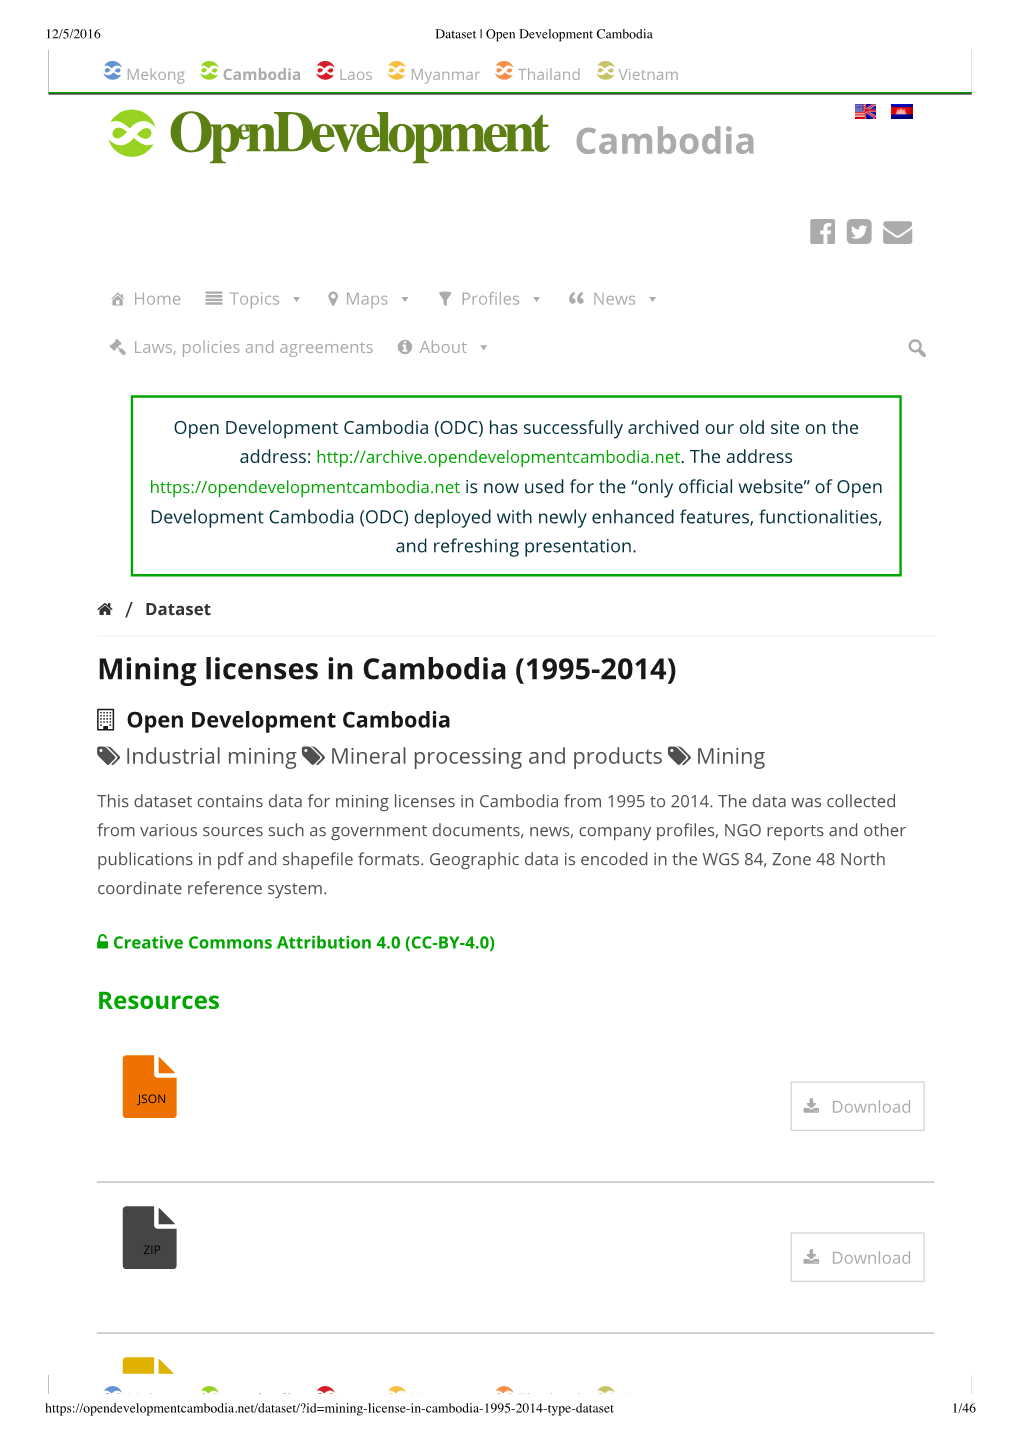 Mining Licenses in Cambodia (1995-2014)